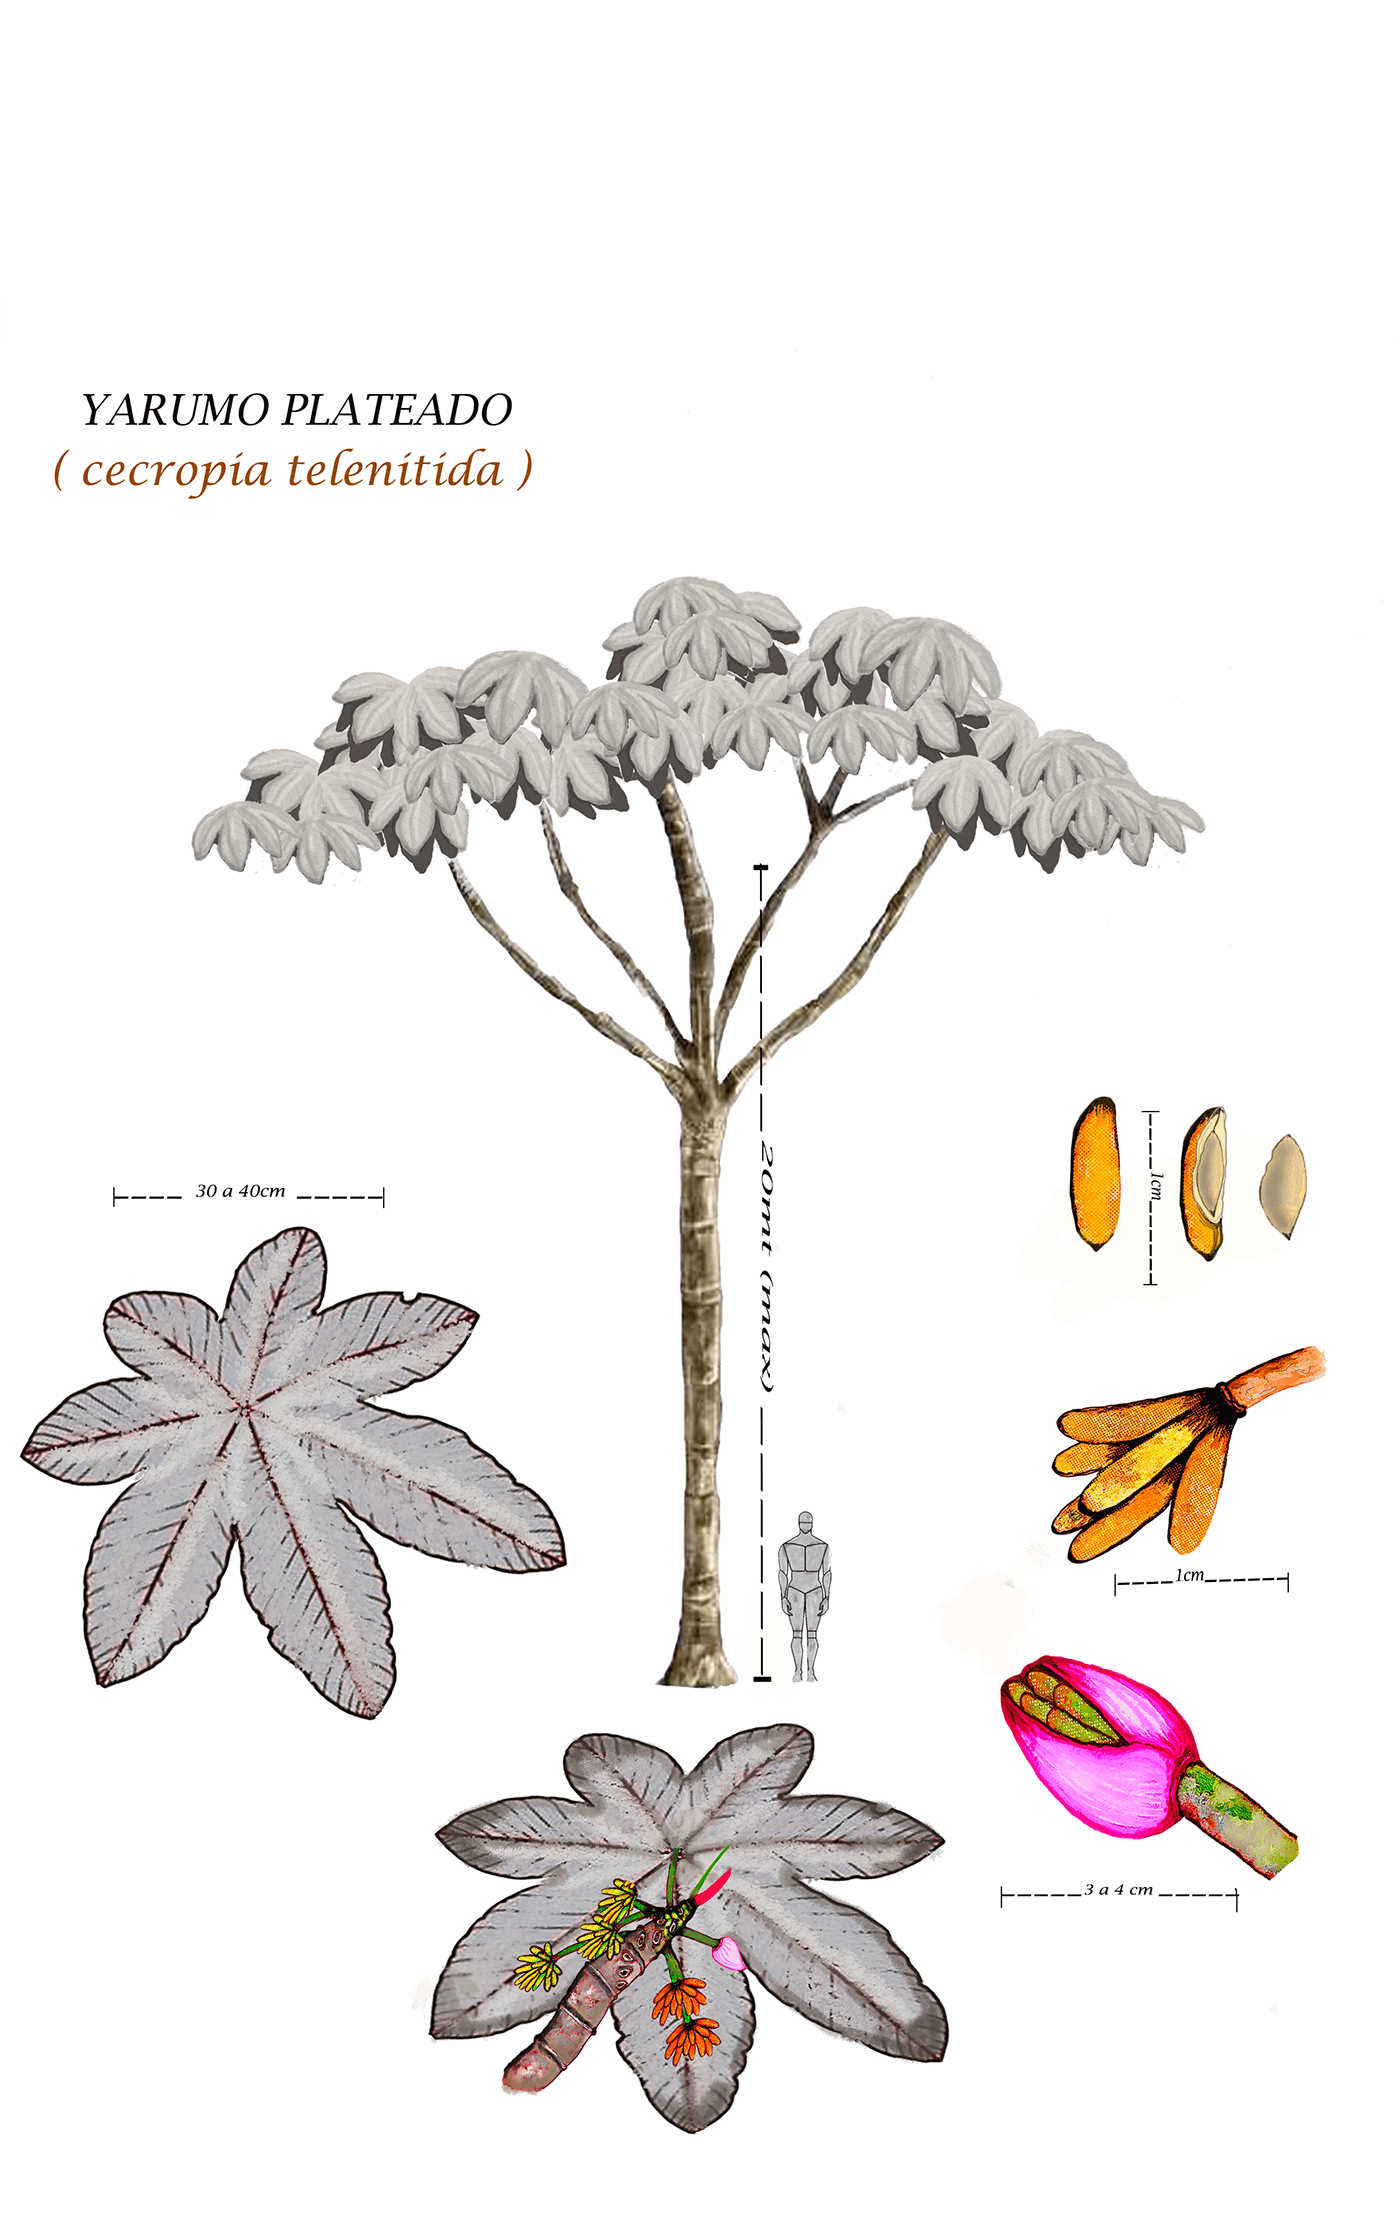 arbol ciencia especies nativas ilustración científica